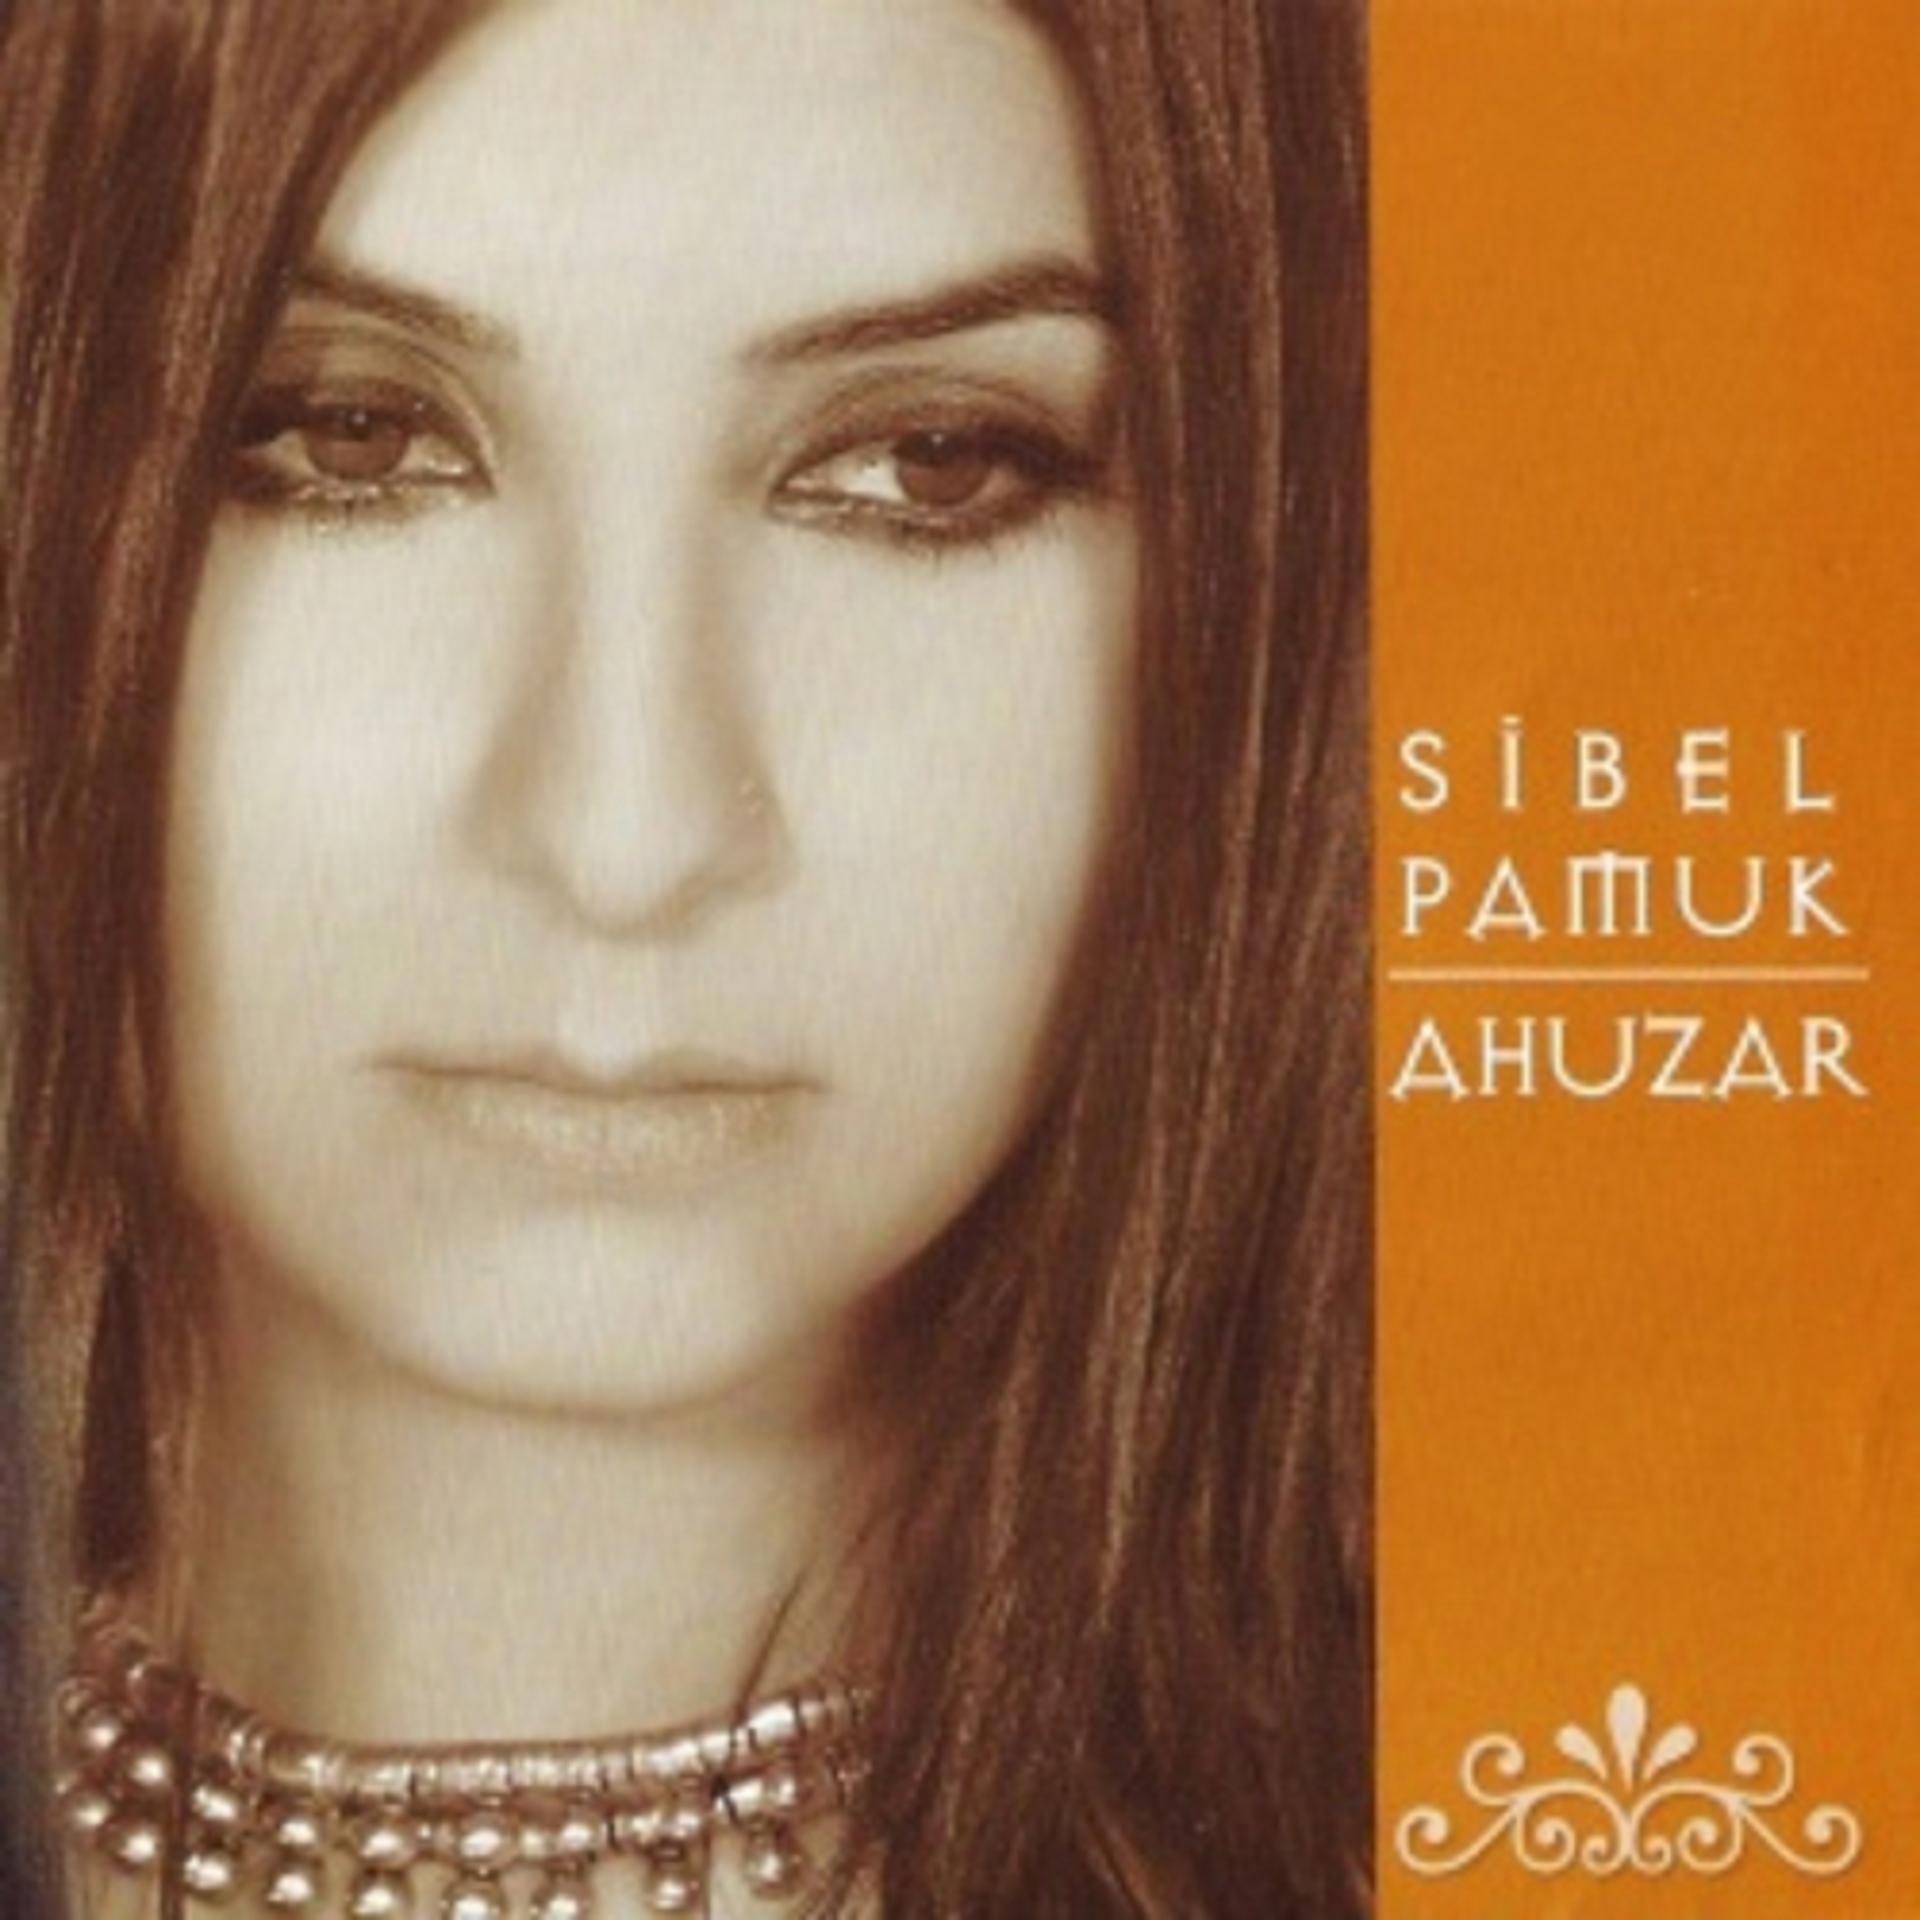 Постер к треку Sibel Pamuk - Hazin Hazin Ağlar Gönül